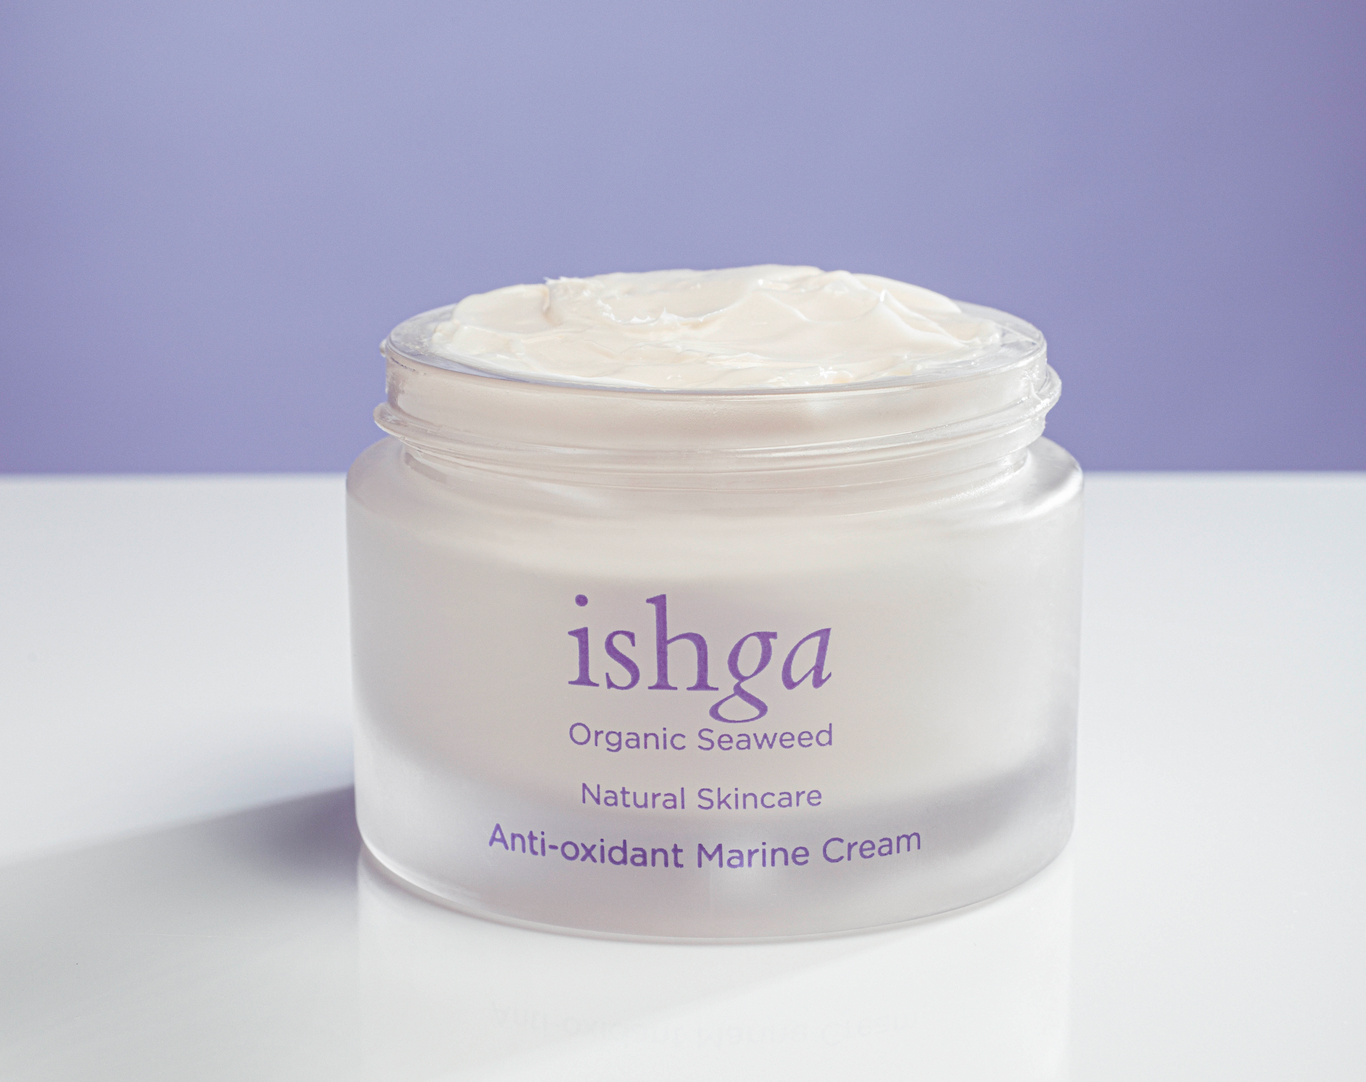 What makes ishga’s Anti-oxidant Marine Cream so unique?